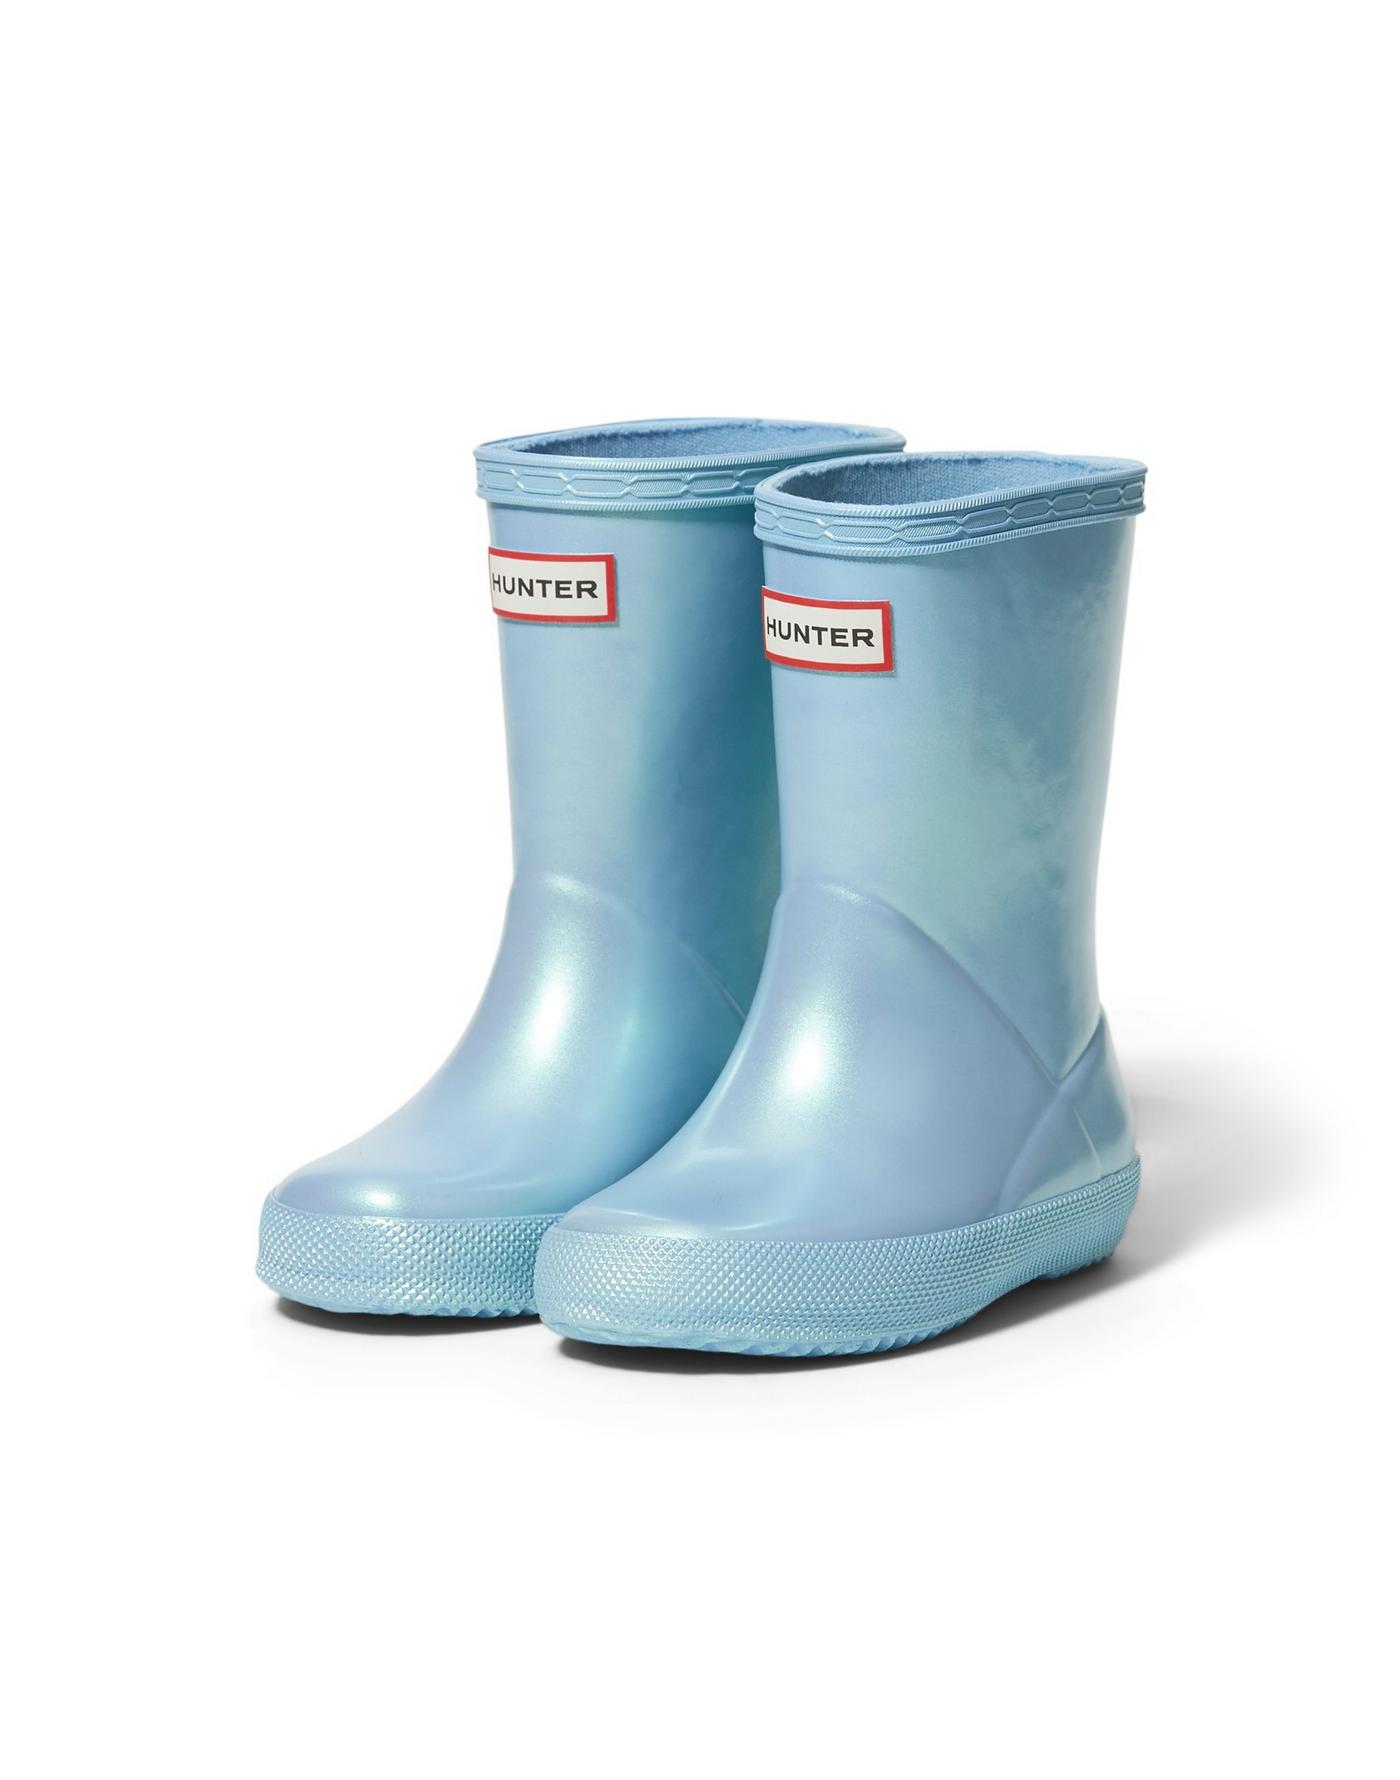 rain boots for kids, Hunter rain boots kids